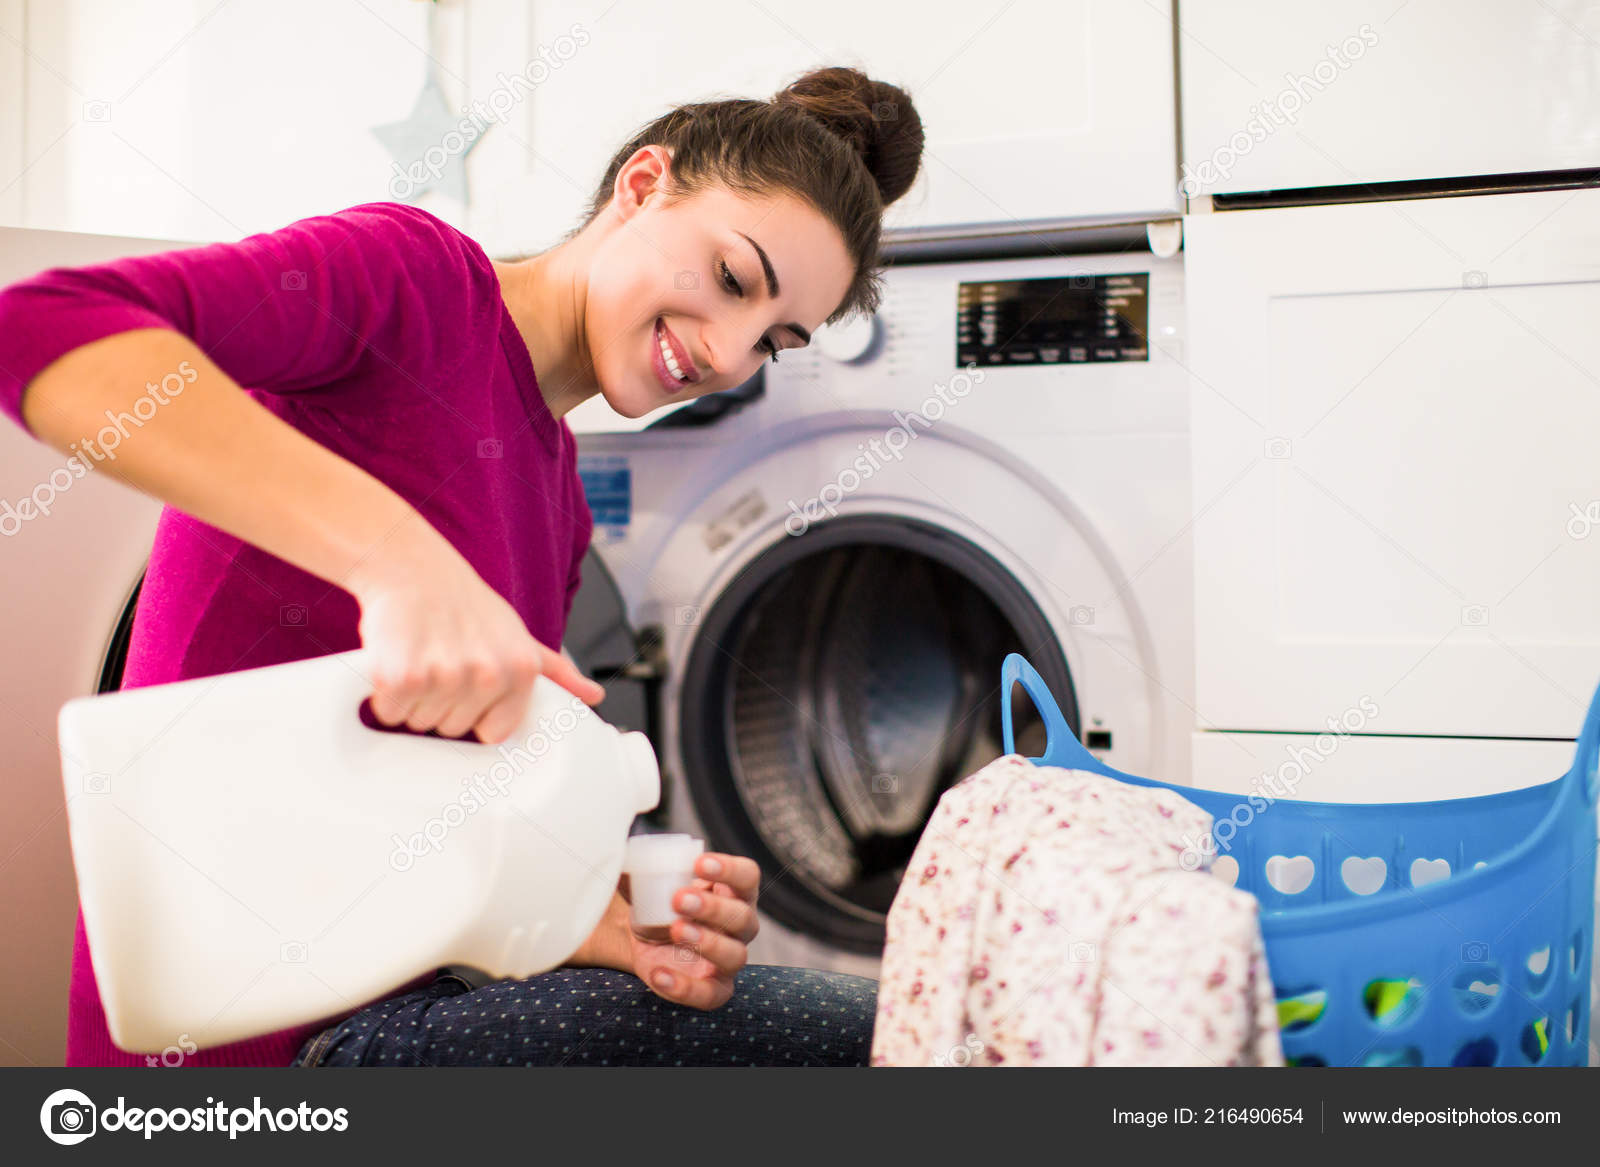 Wash это. Стирка одежды. Одежда в стиральной машине. Стиралка с вещами. Белье в машинке.